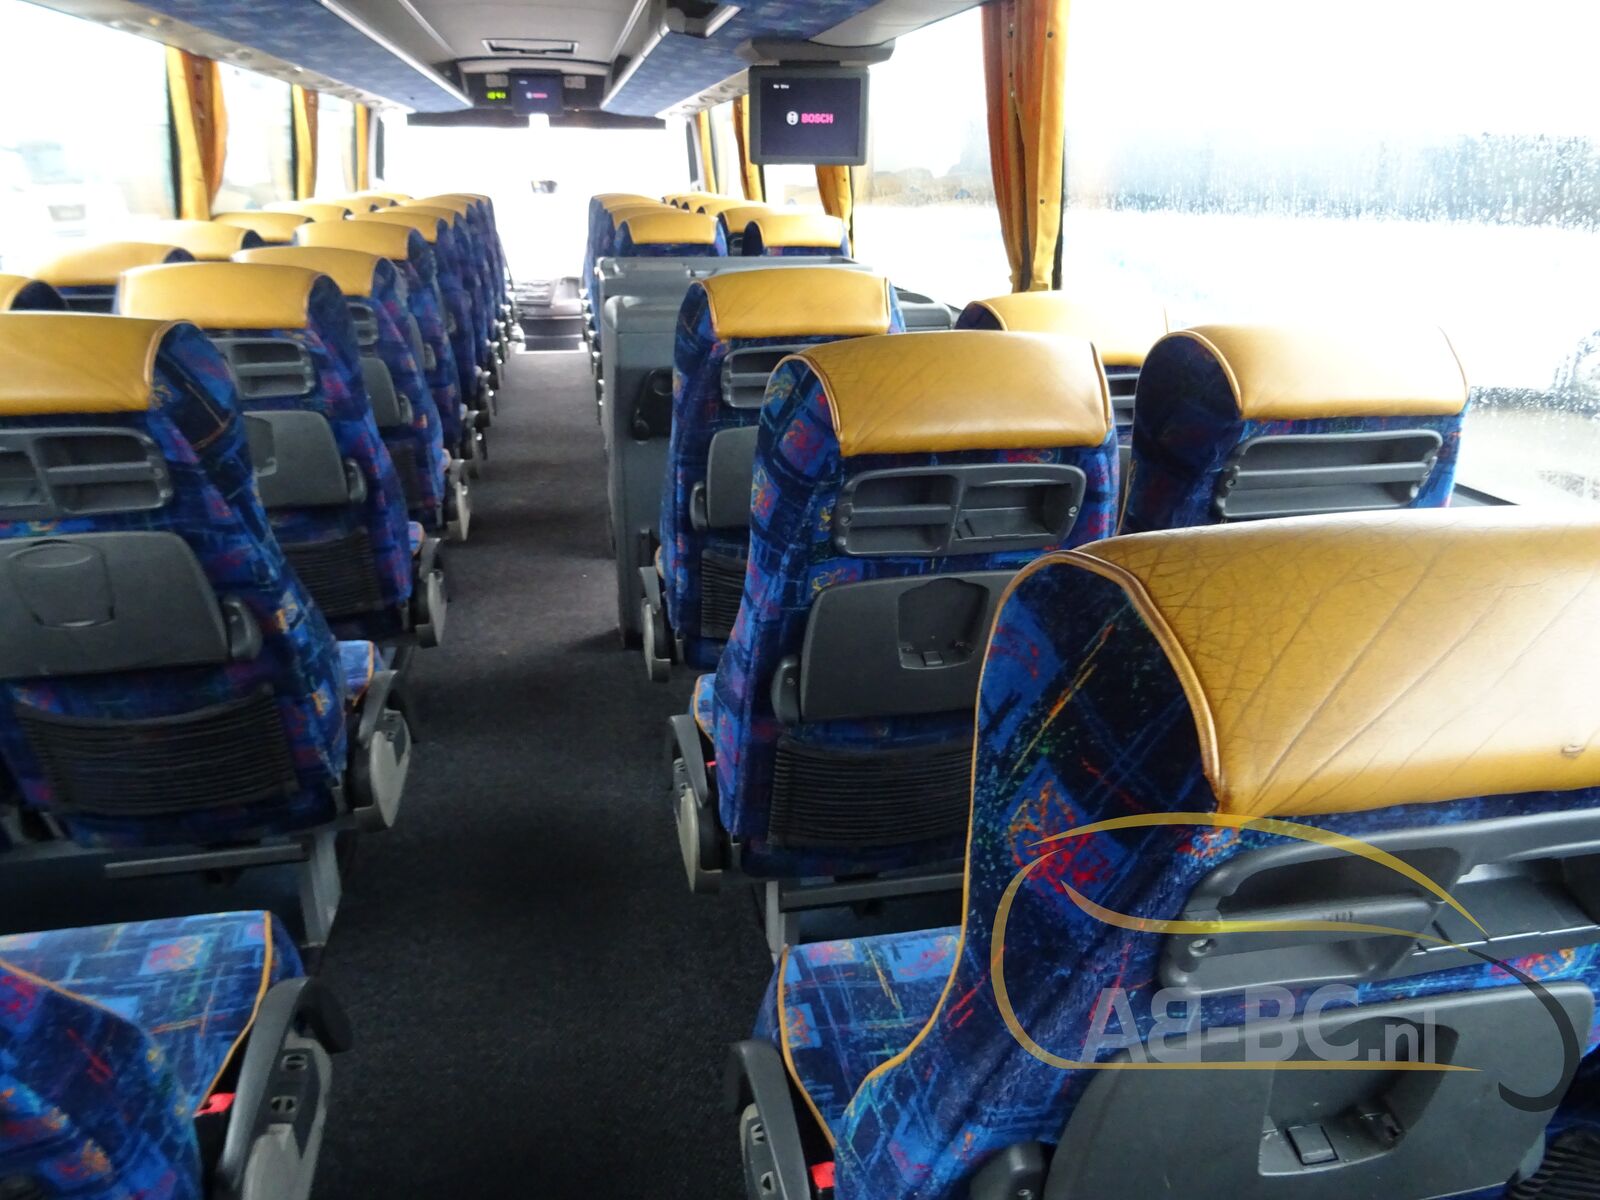 coach-bus-VDL-BOVA-Magiq-61-Seats---1641303530766686781_orig_531ae0714d551a8ae85bdd64e6b1276d--22010415282369368500